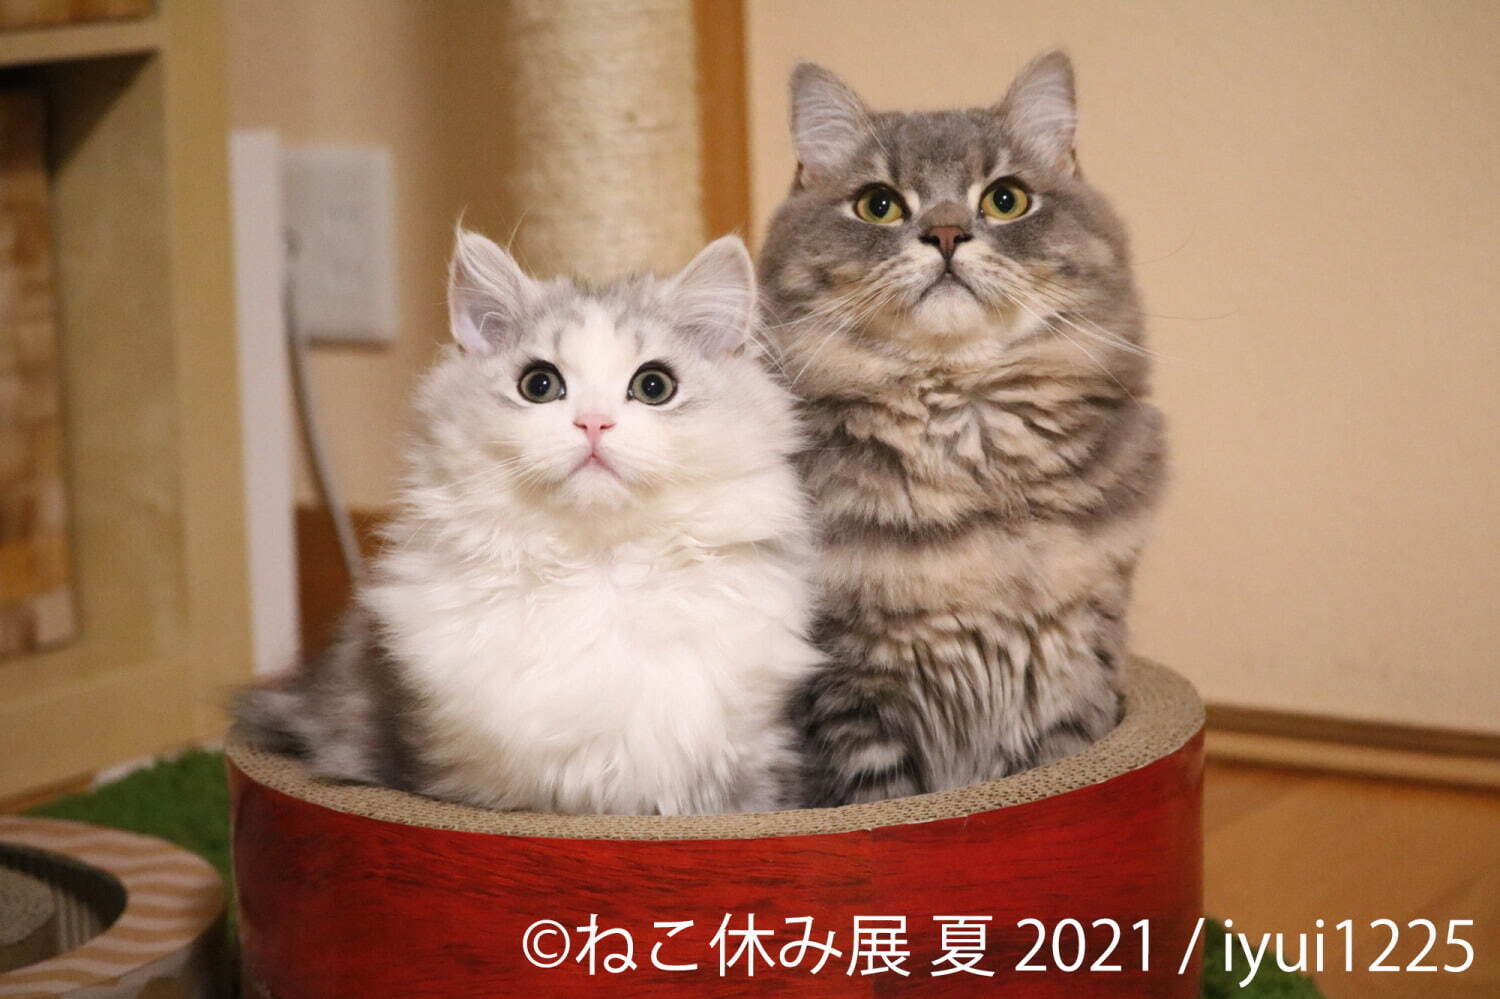 過去最大規模”癒し猫の写真展「ねこ休み展 夏 2021」東京・浅草で